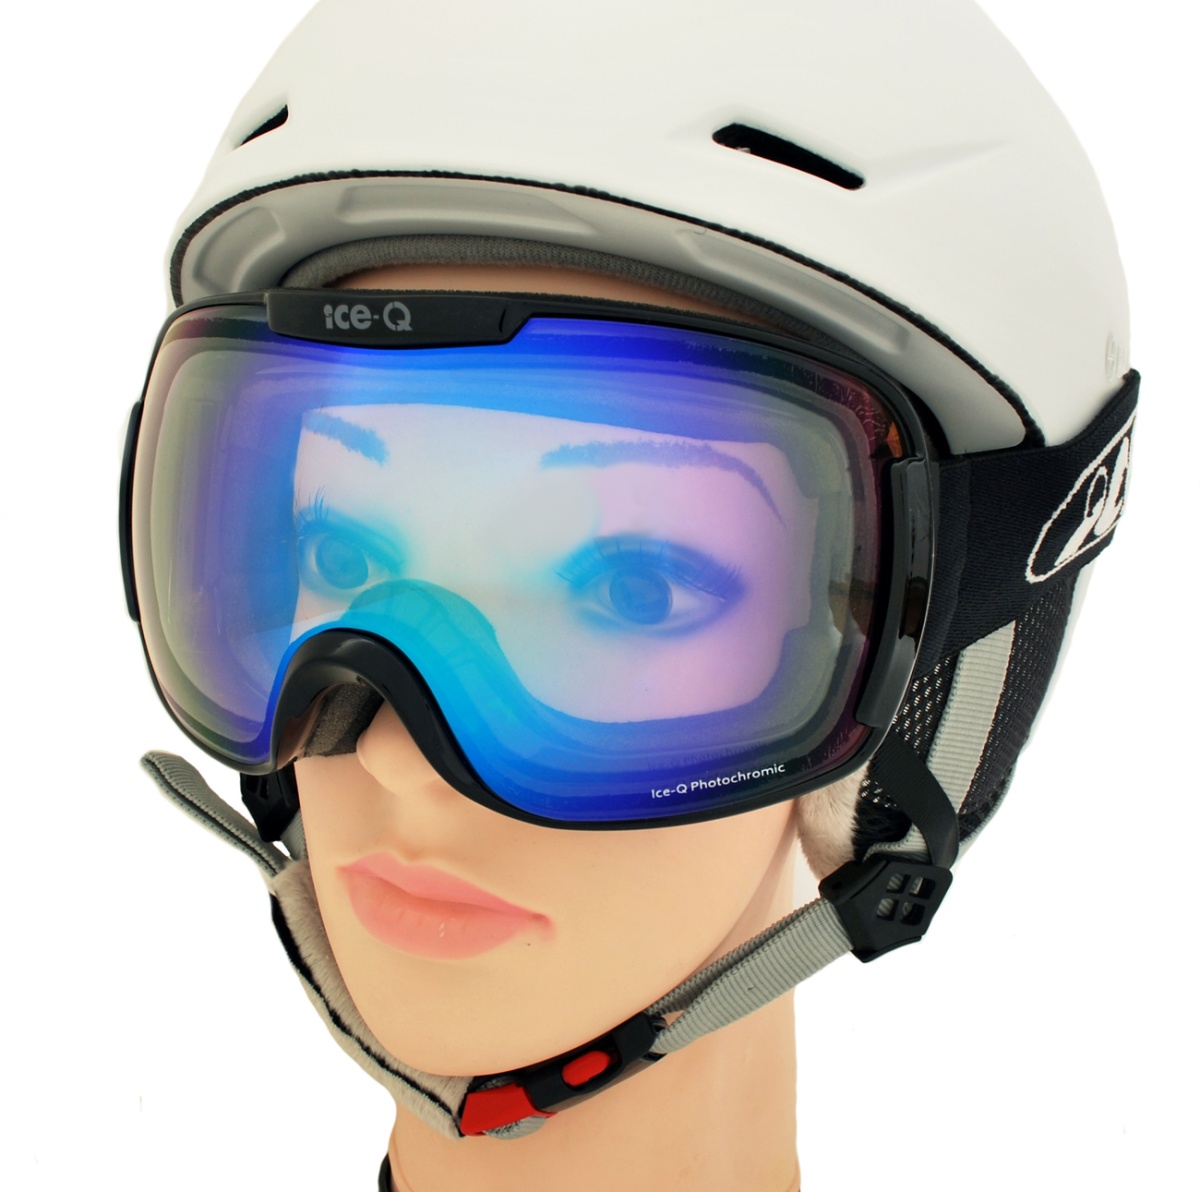 Gogle narciarskie Ice-Q Alta Badia Photochromic Blue OTG na okulary S1-S3